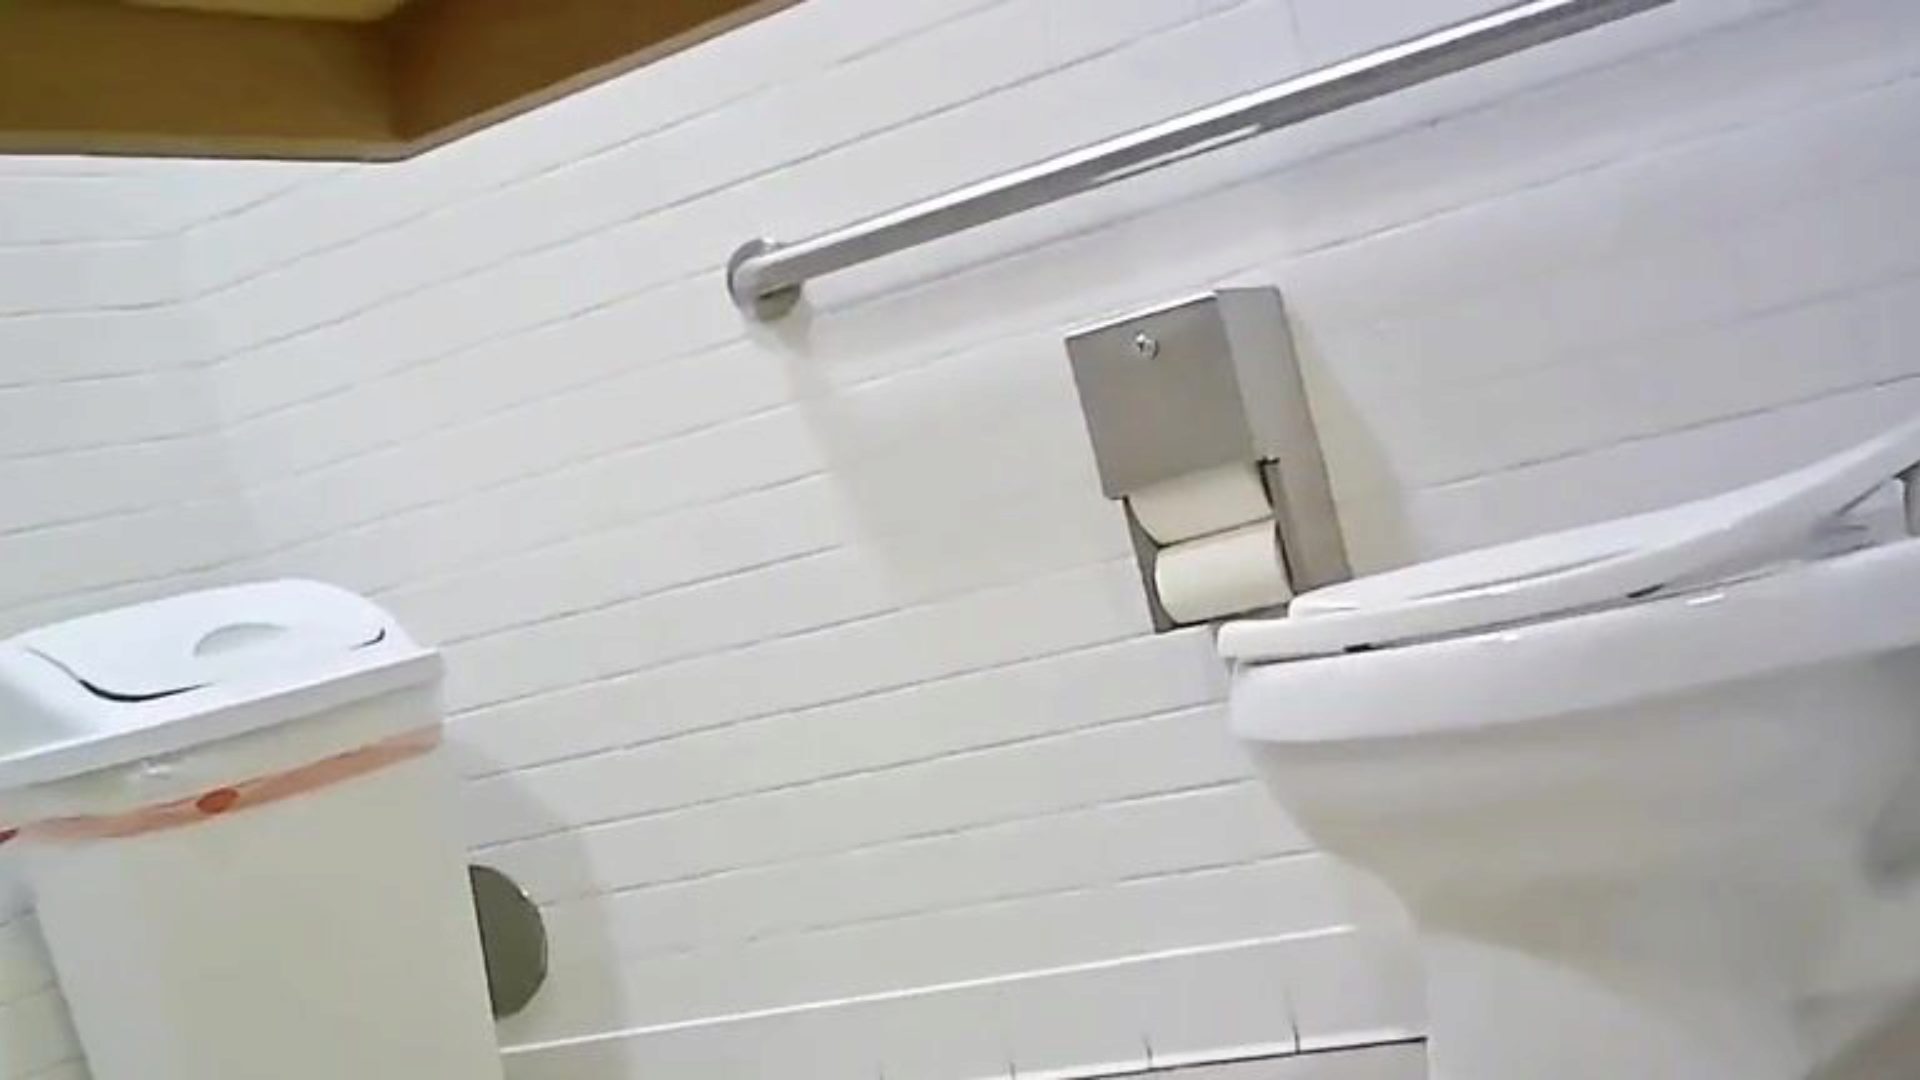 skrytá záchodová kamera - fit dívka dokonalý zadek, podívejte se na tohle, řekněte mi, co si myslíte; p ‘